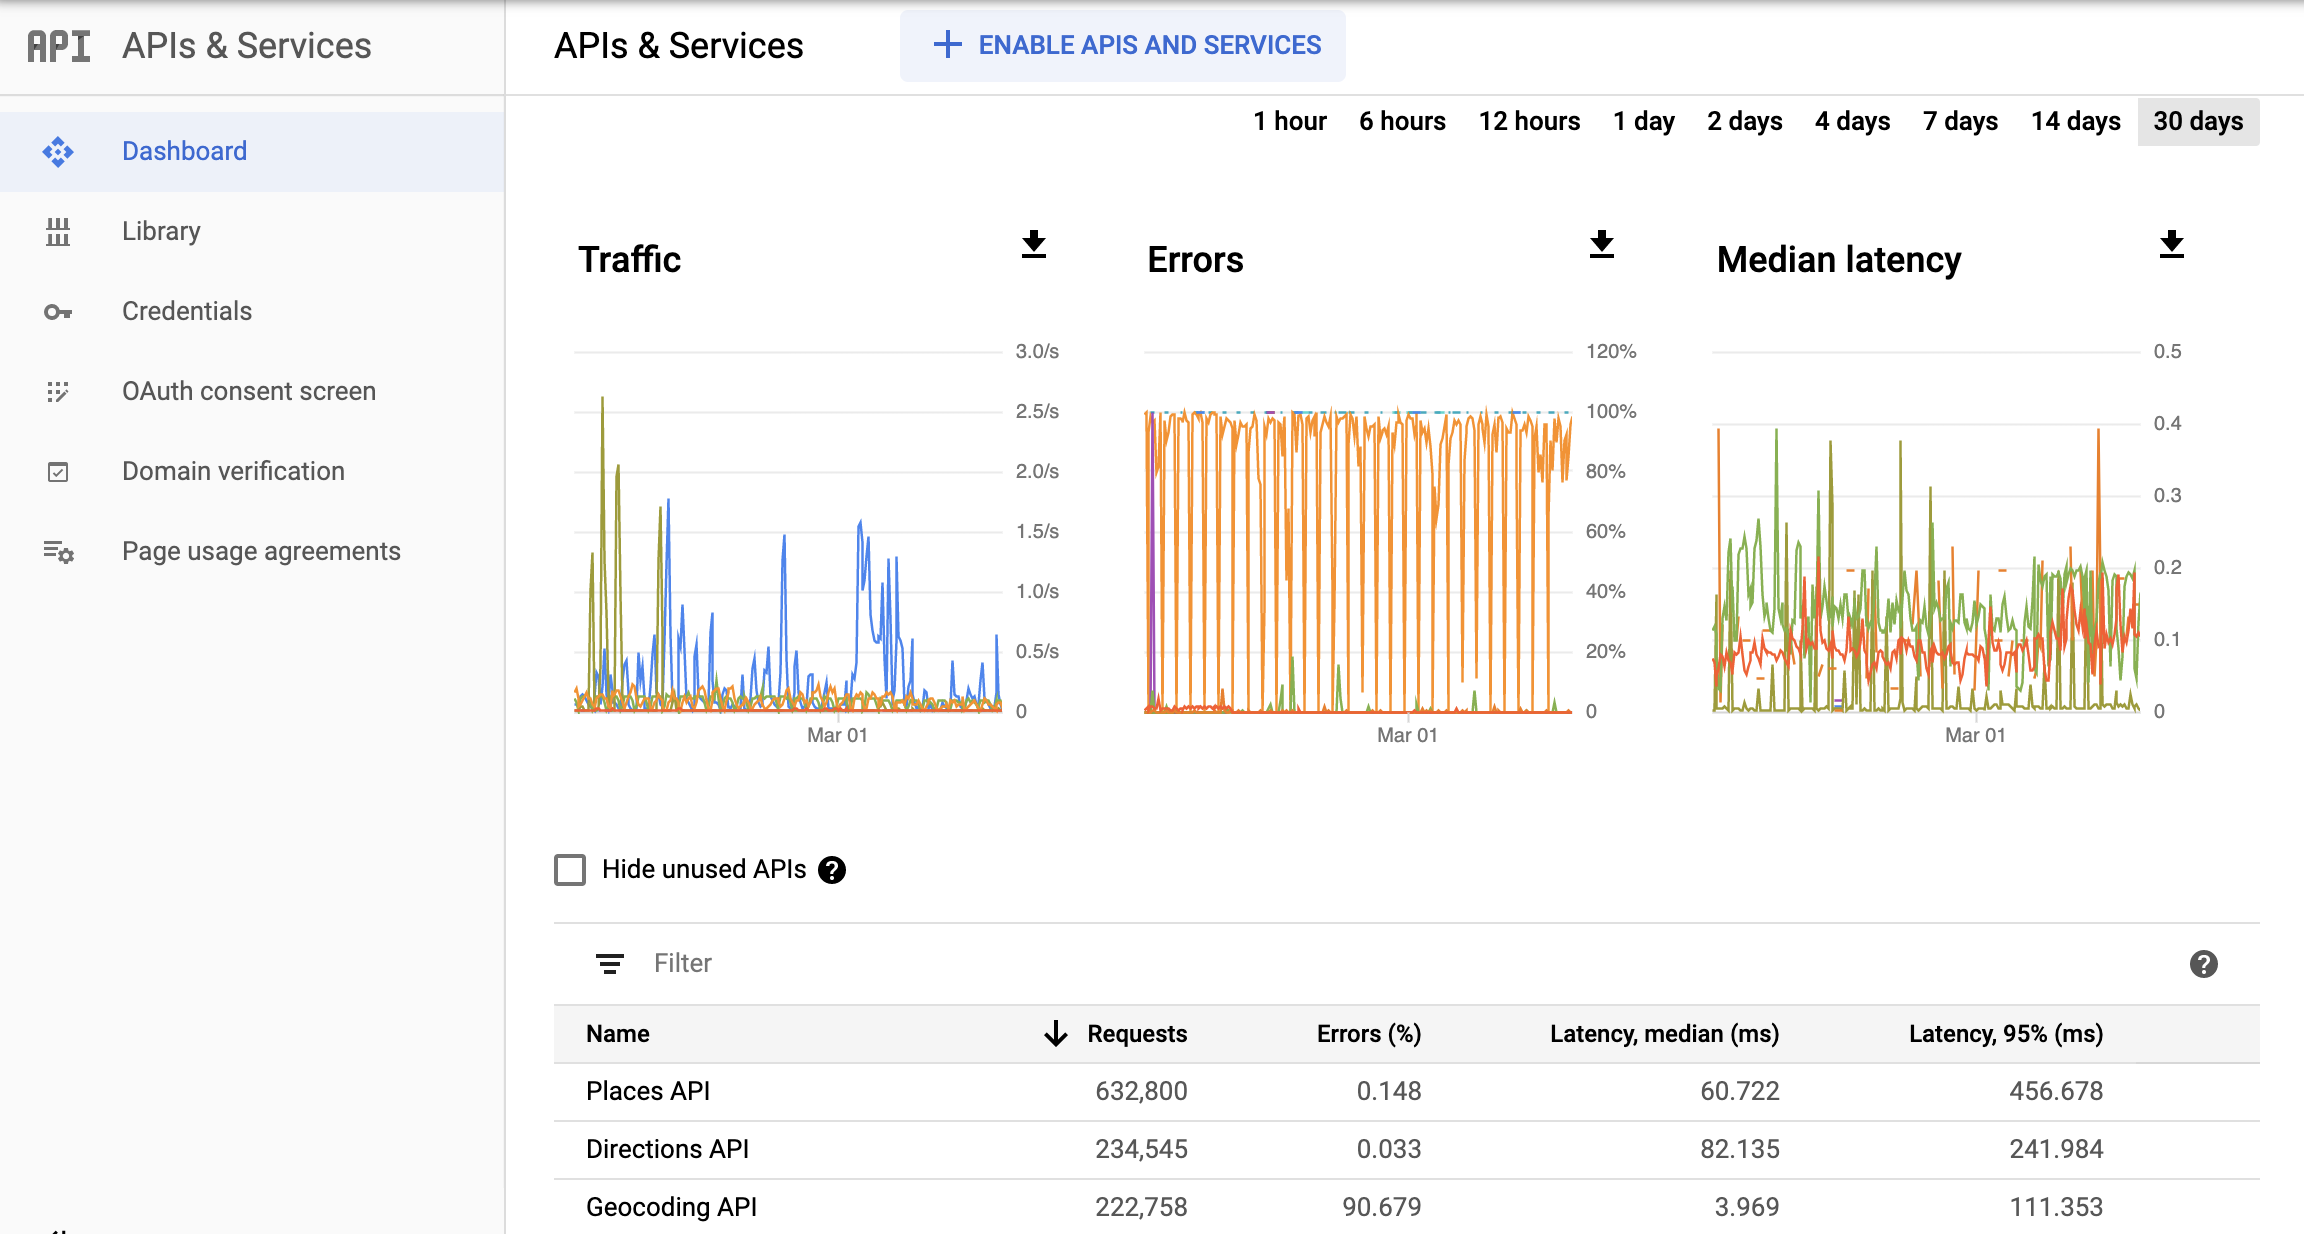 Ảnh chụp màn hình trang API giám sát trong Google Cloud Console, hiển thị trang tổng quan về báo cáo API và Dịch vụ. Báo cáo này cho bạn thấy các biểu đồ riêng biệt về Lưu lượng truy cập, Lỗi và Độ trễ trung bình. Các biểu đồ này có thể hiển thị dữ liệu trong một giờ cho đến 30 ngày.